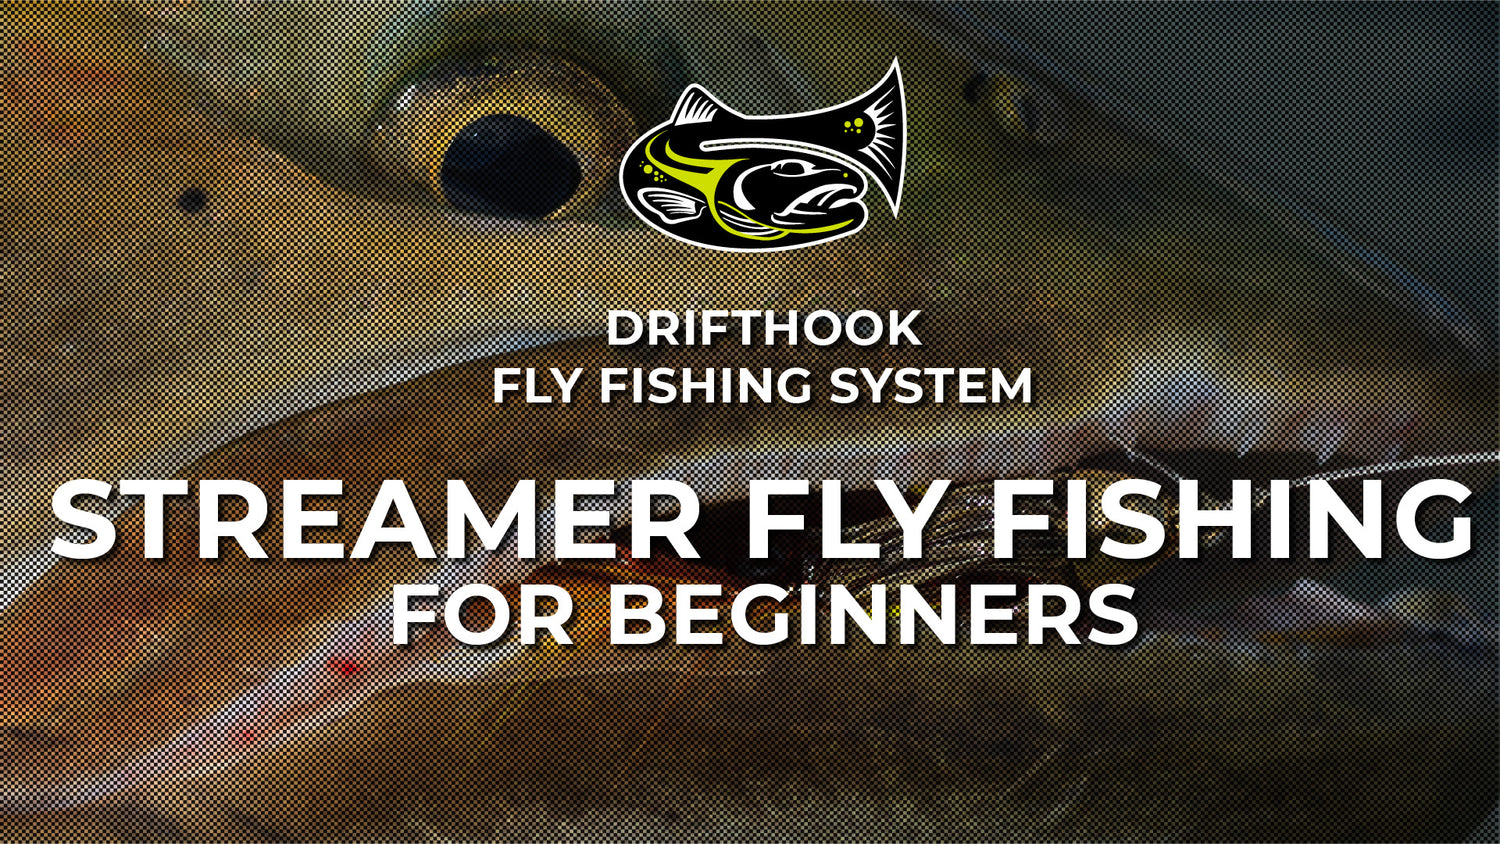 Streamer Fly Fishing for Beginners